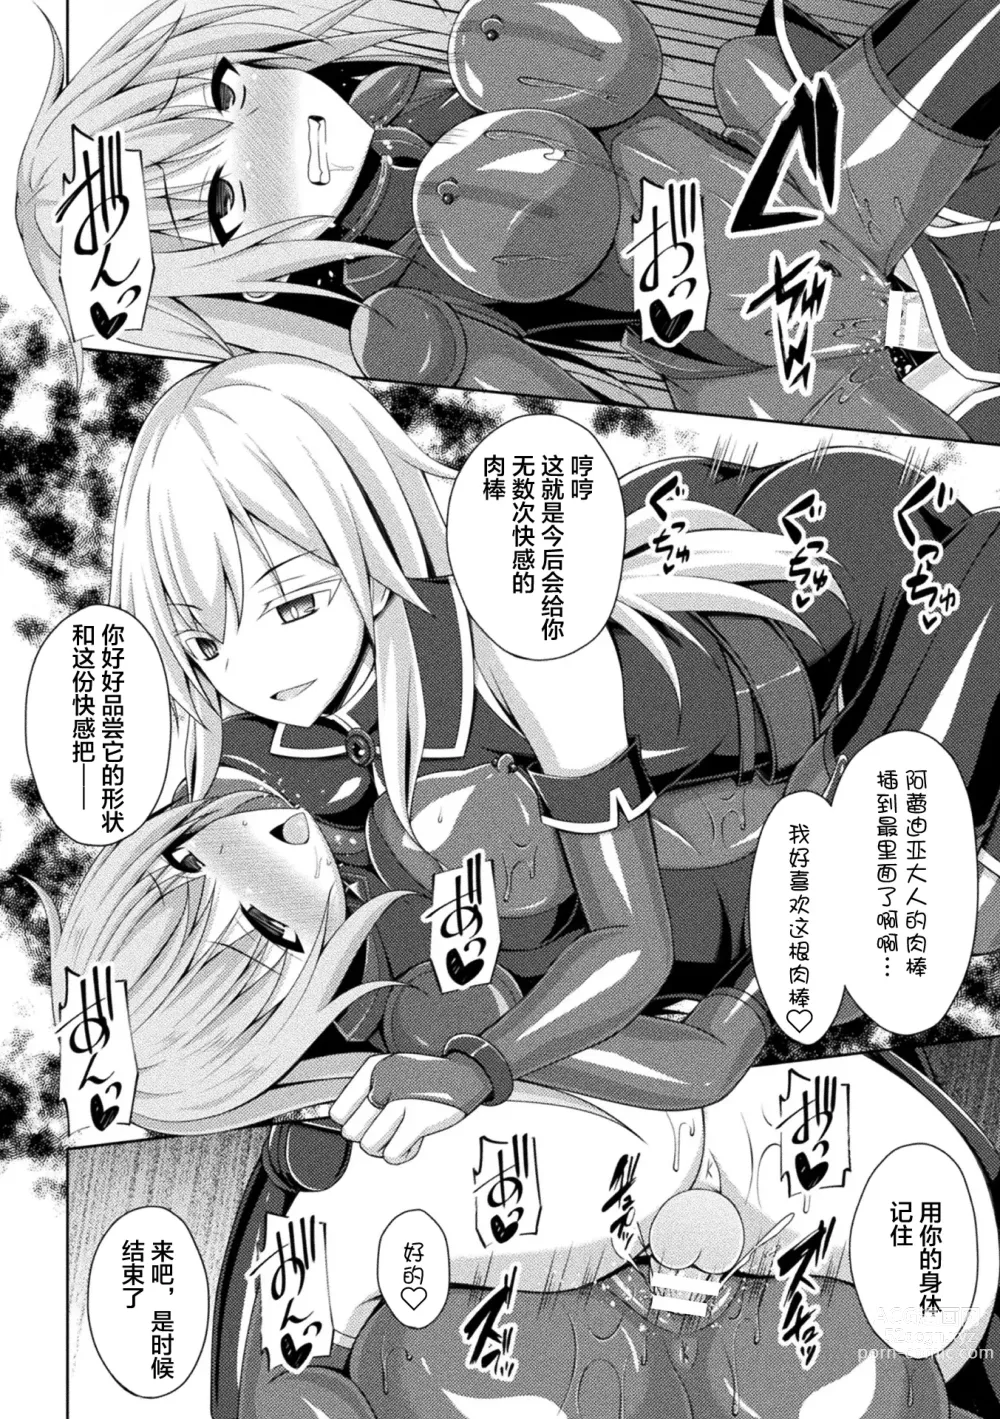 Page 24 of manga Kougyokutenki Glitter Stars ep3. Kuzureru Nichijou, Kuraki En no Yadoru Toki